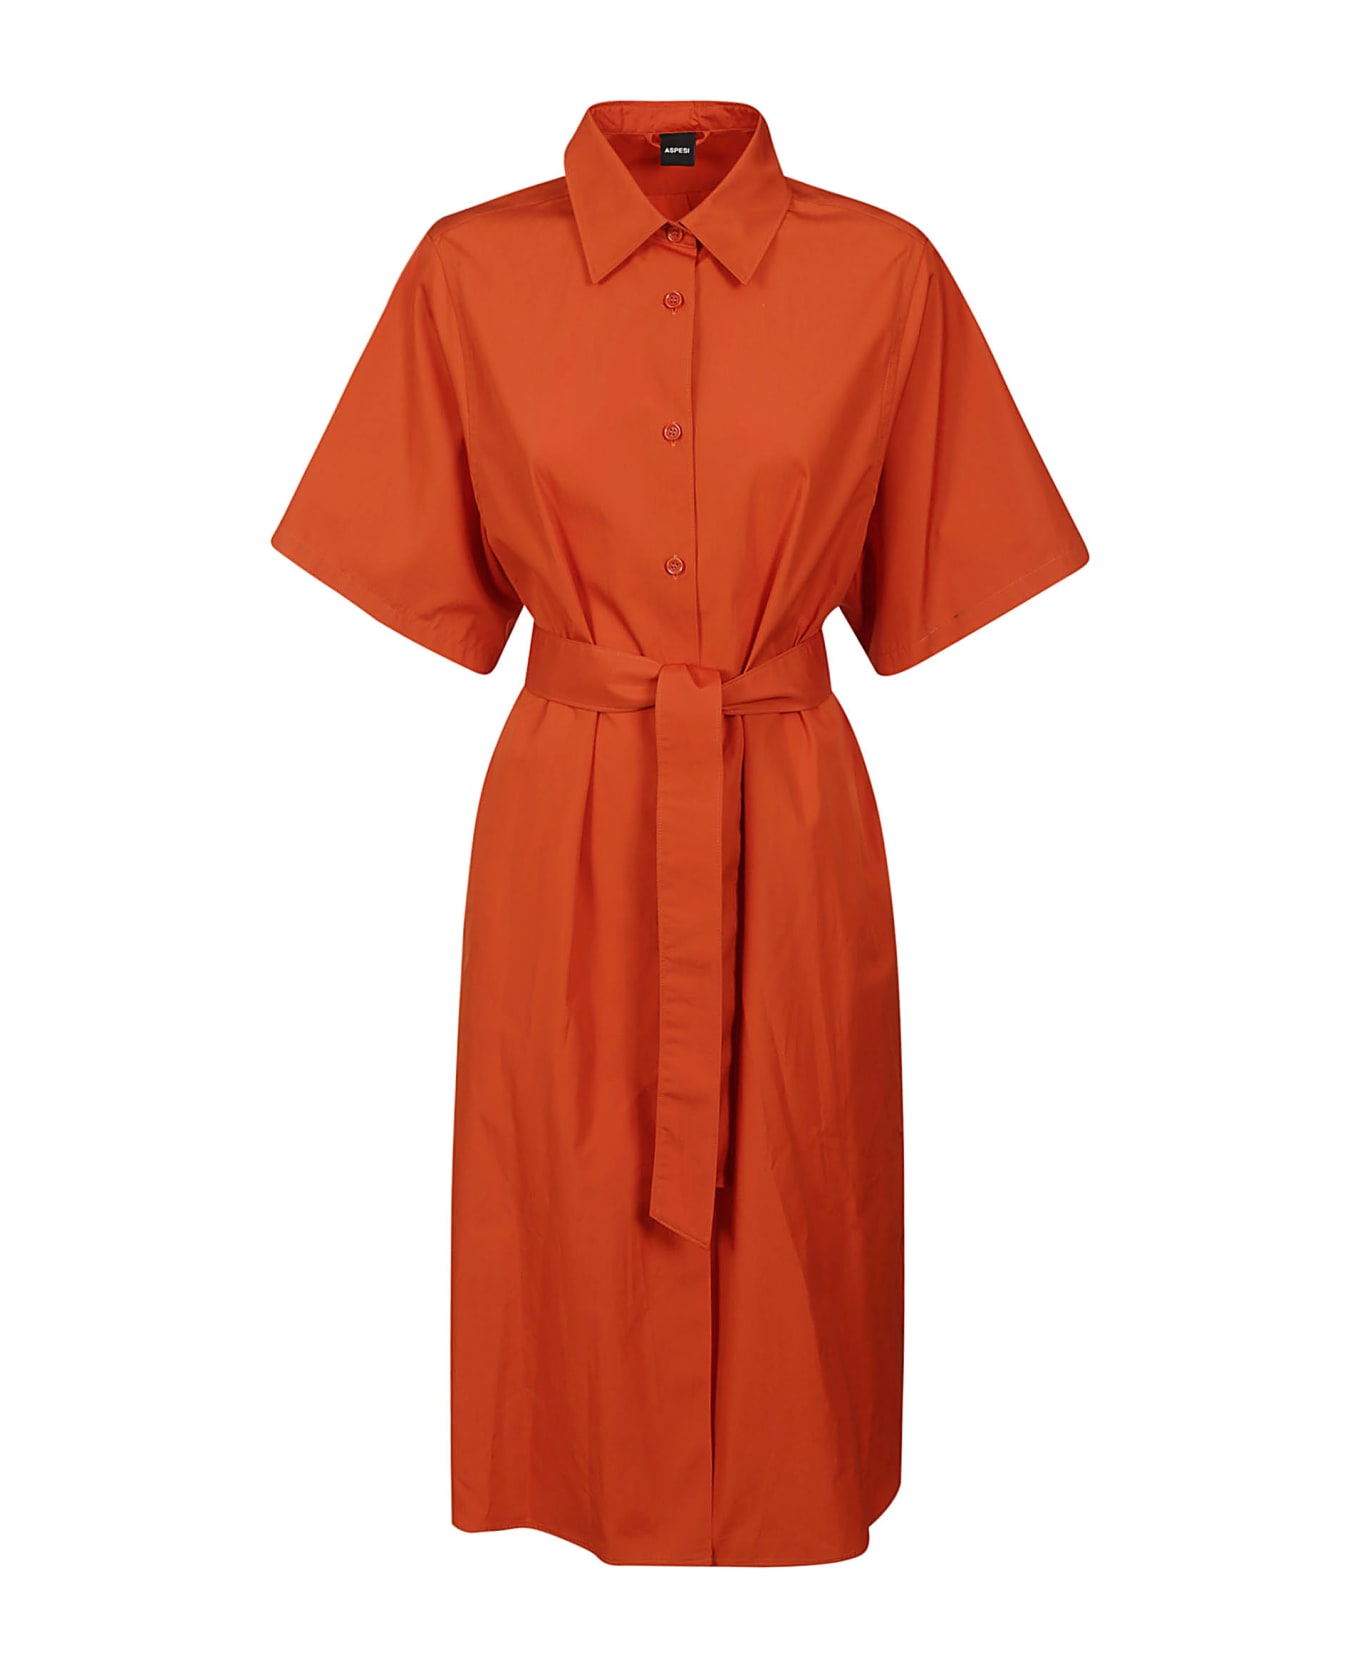 Aspesi Dress Mod.2957 - Orange